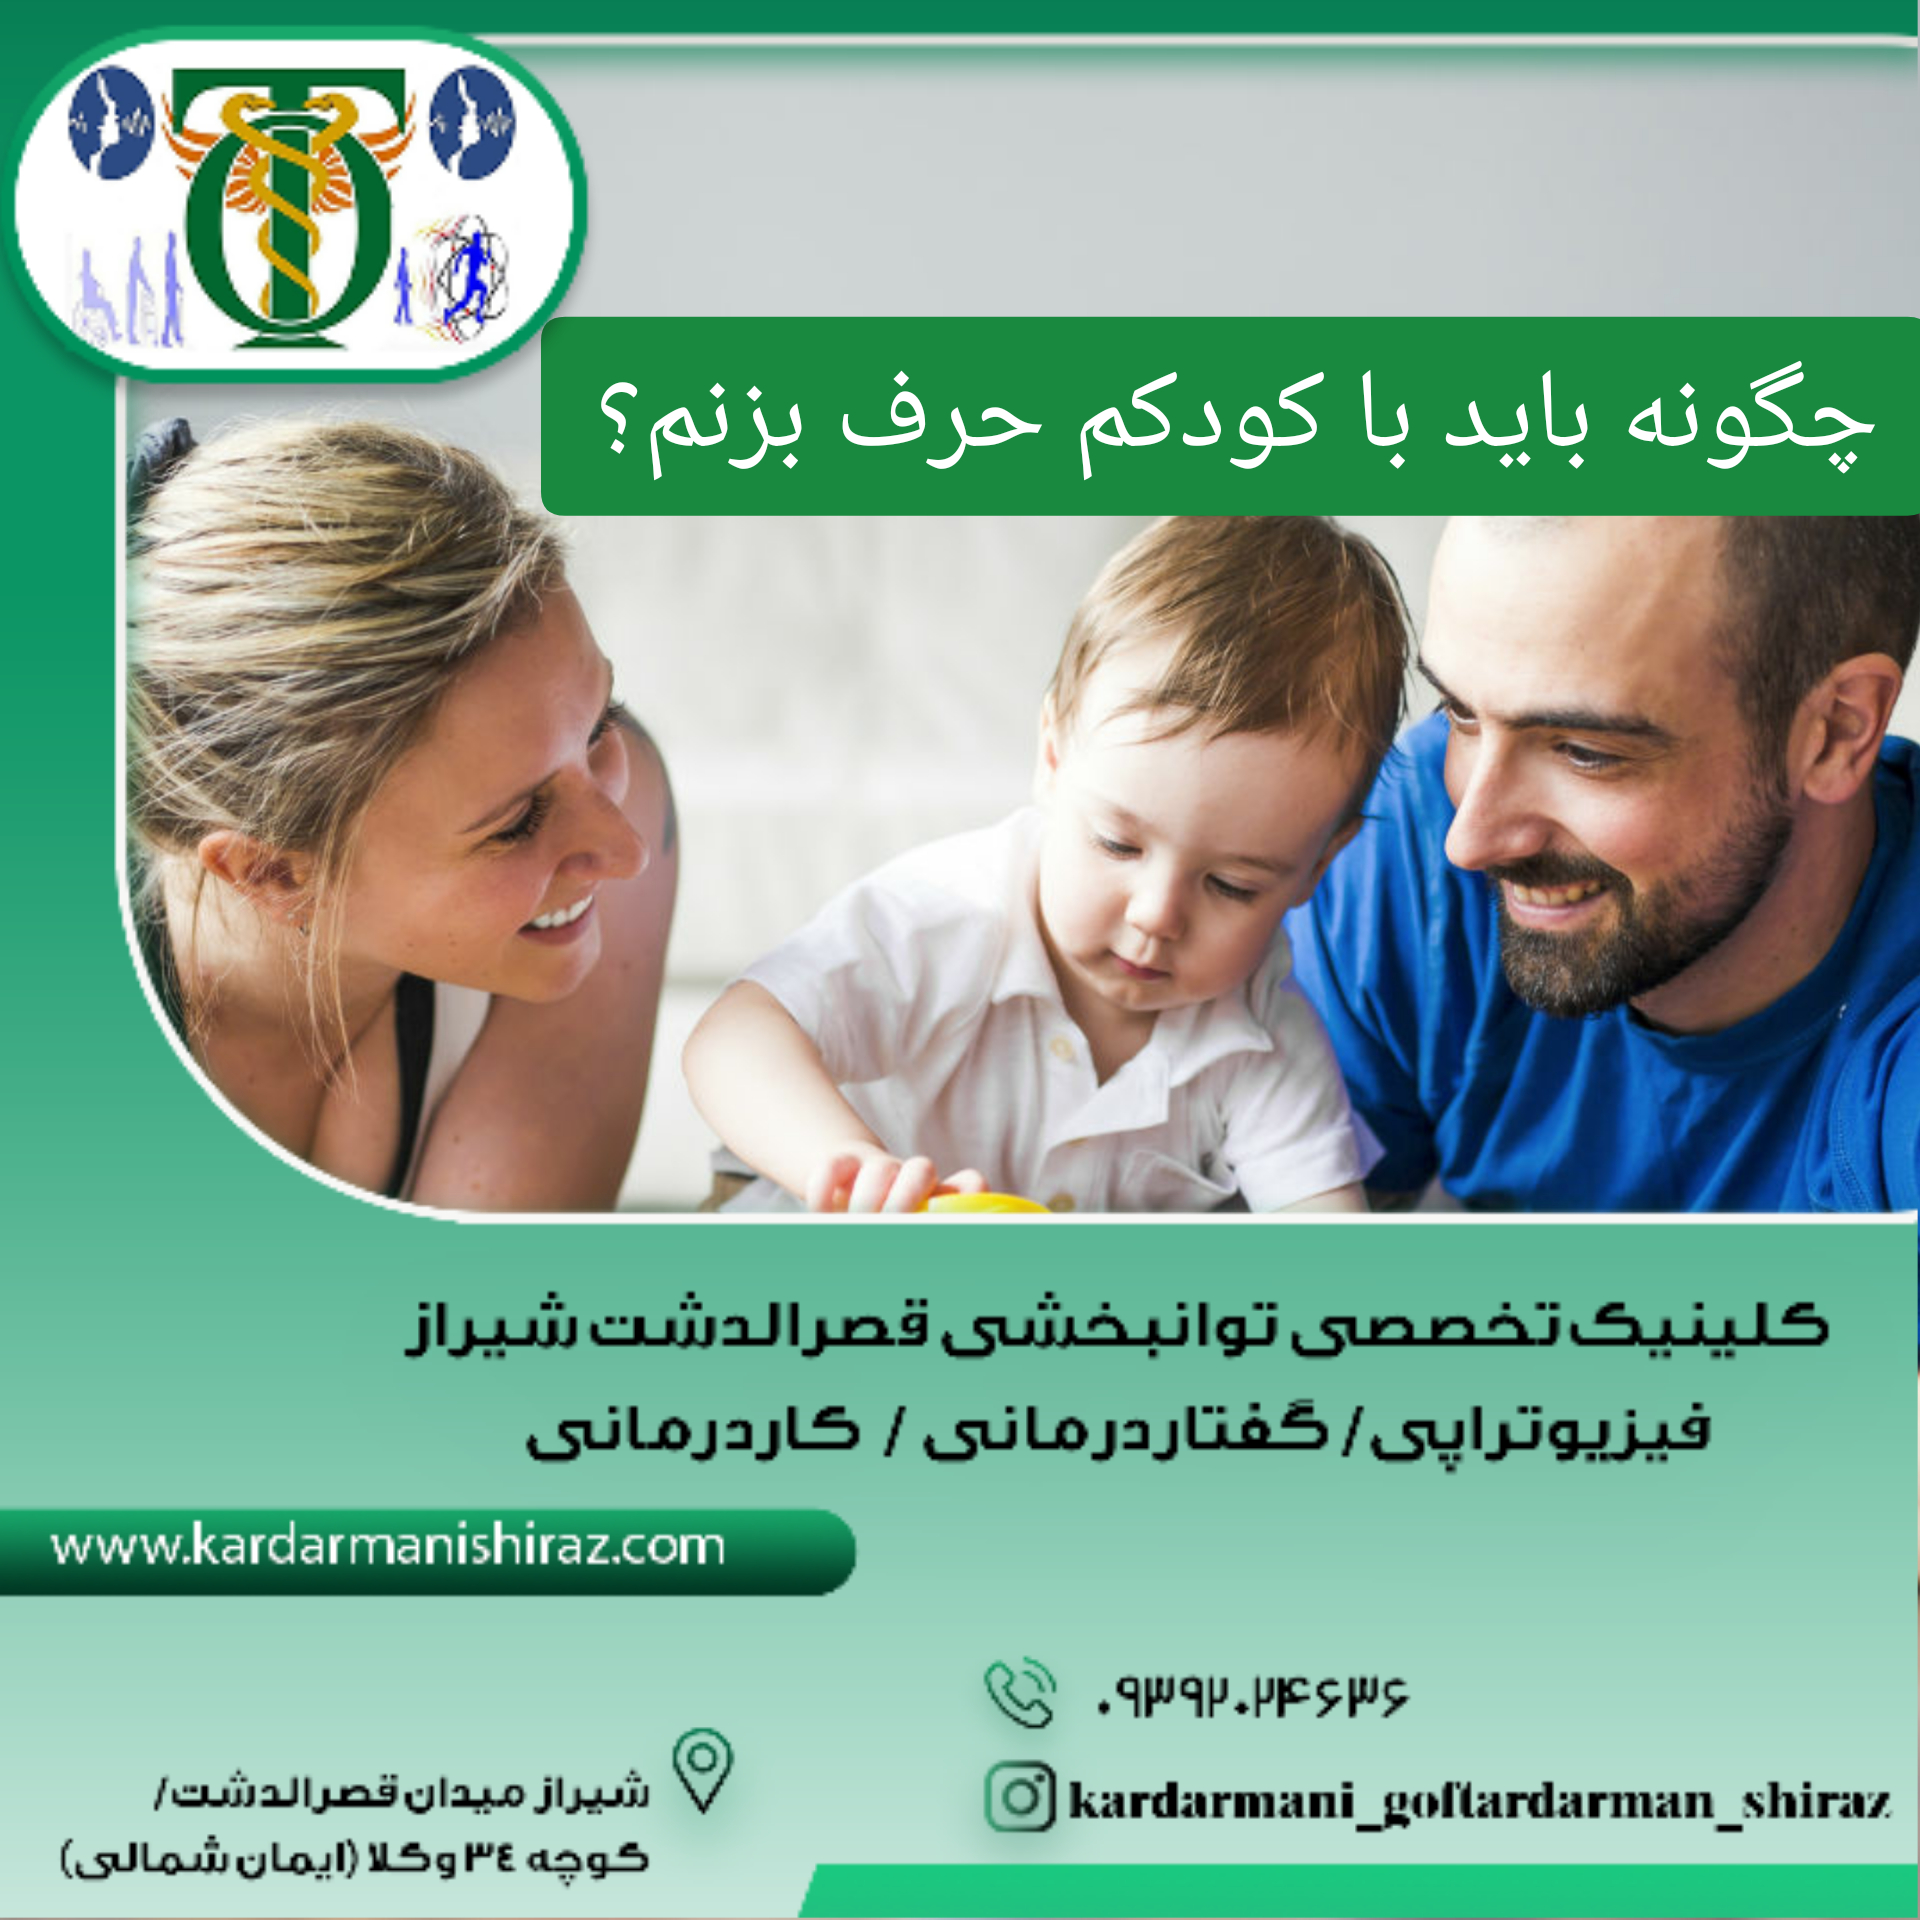 آموزش گفتاردرمانی شیراز_گفتار مناسب والدین با کودکان